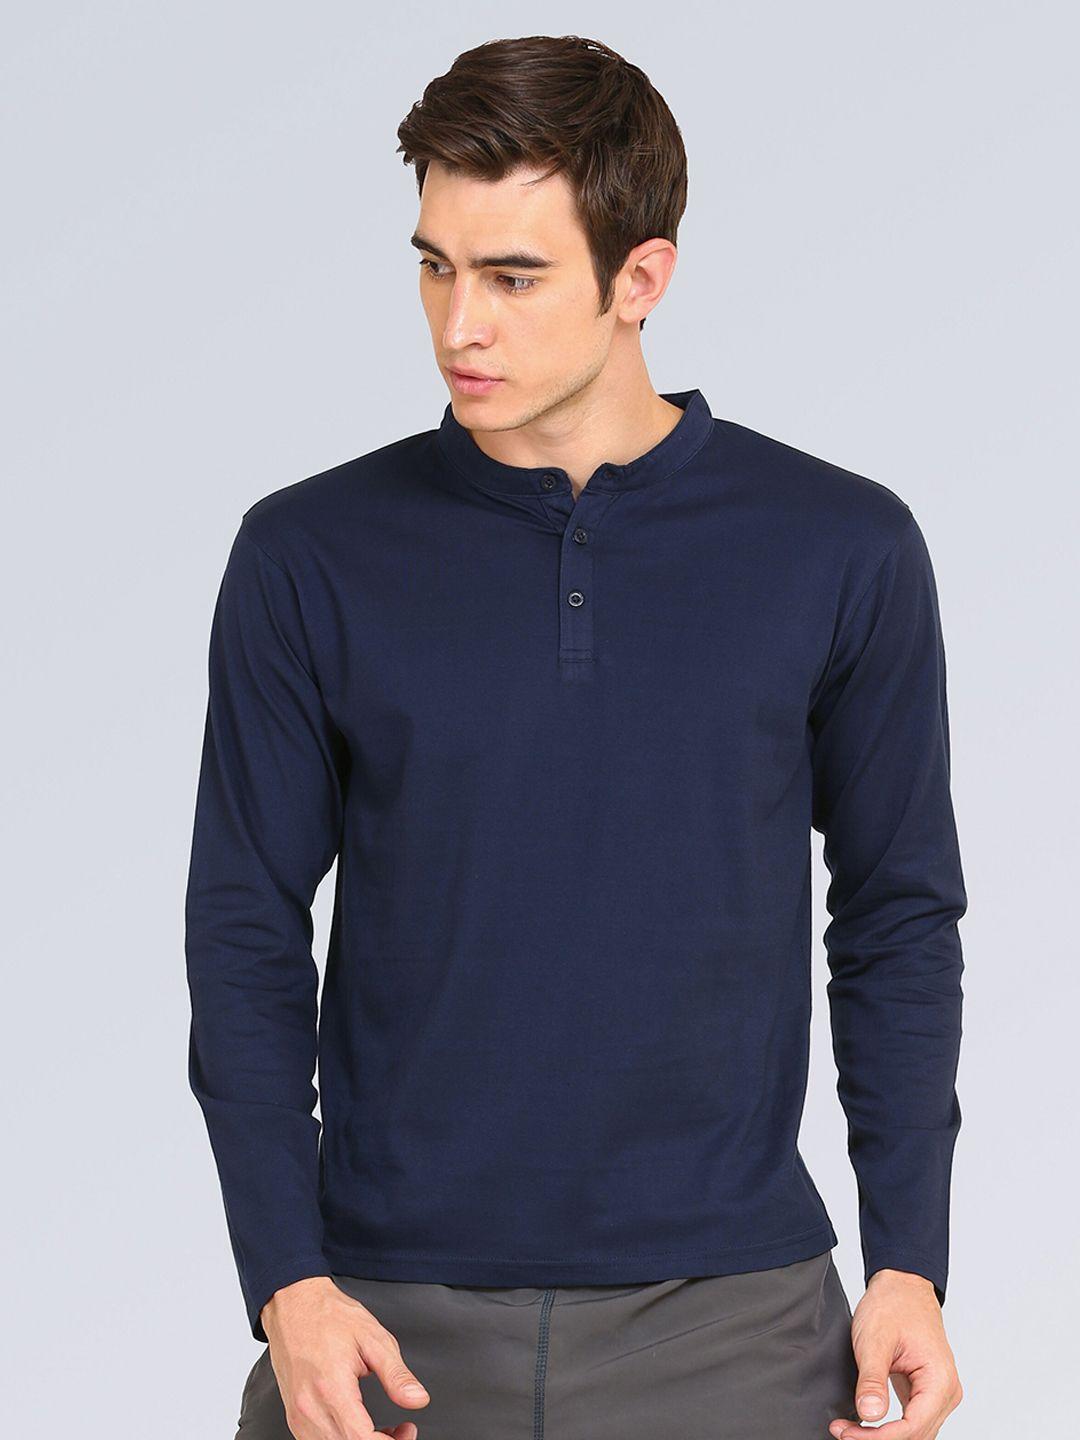 appulse-men-navy-blue-solid-mandarin-collar-t-shirt